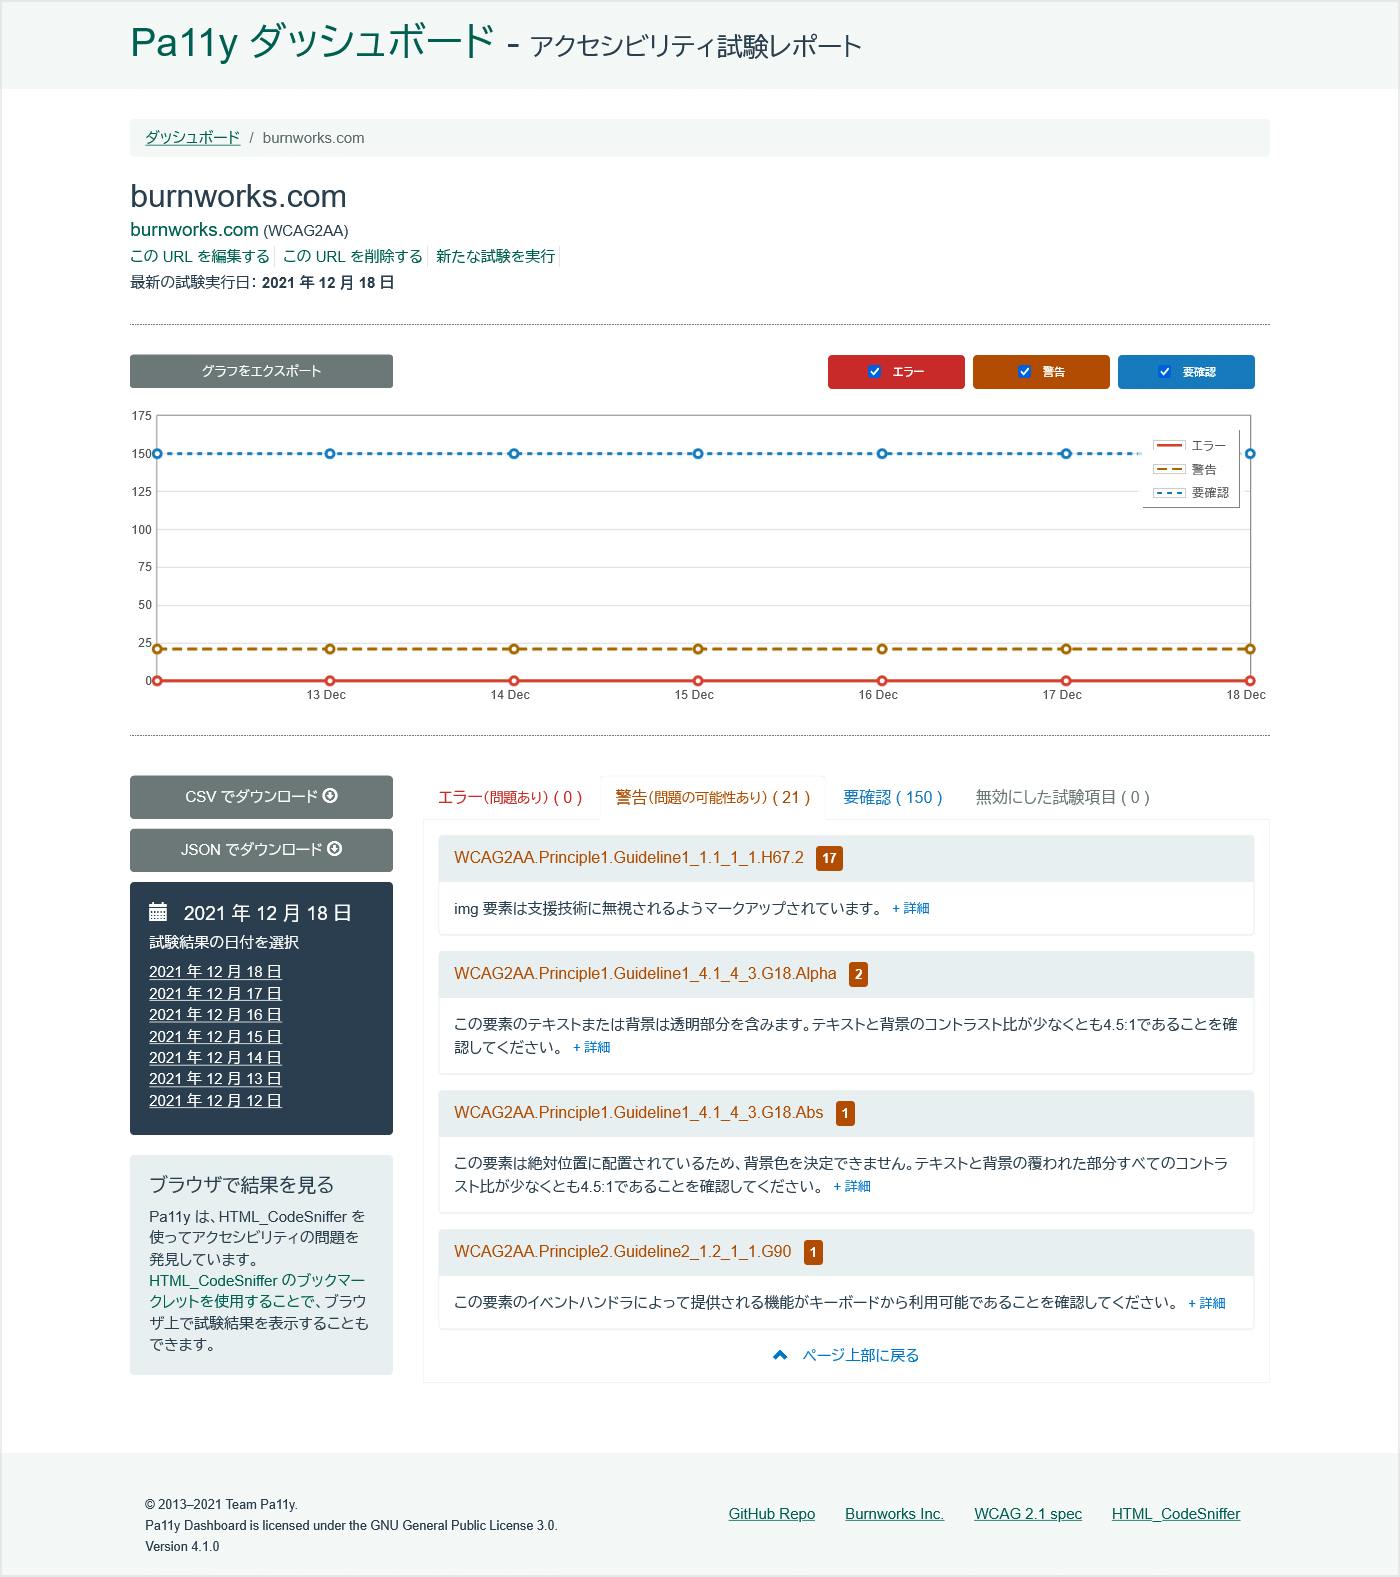 Pa11y Dashboard 日本語版 試験結果（リザルト）画面